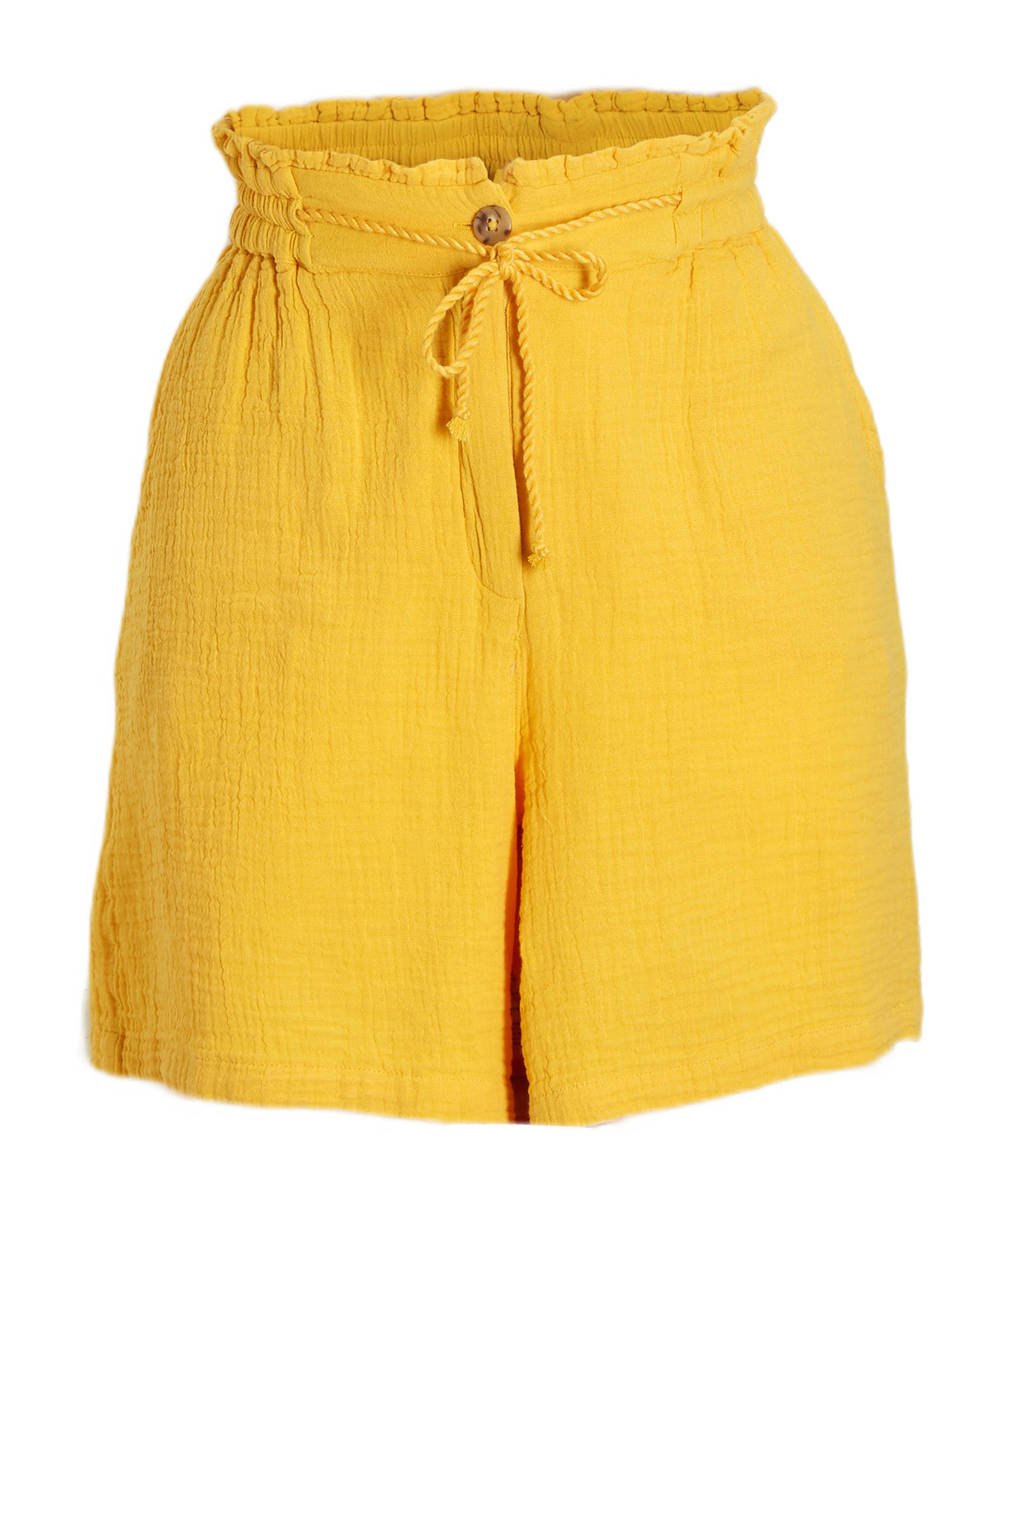 C&A high waist korte broek geel